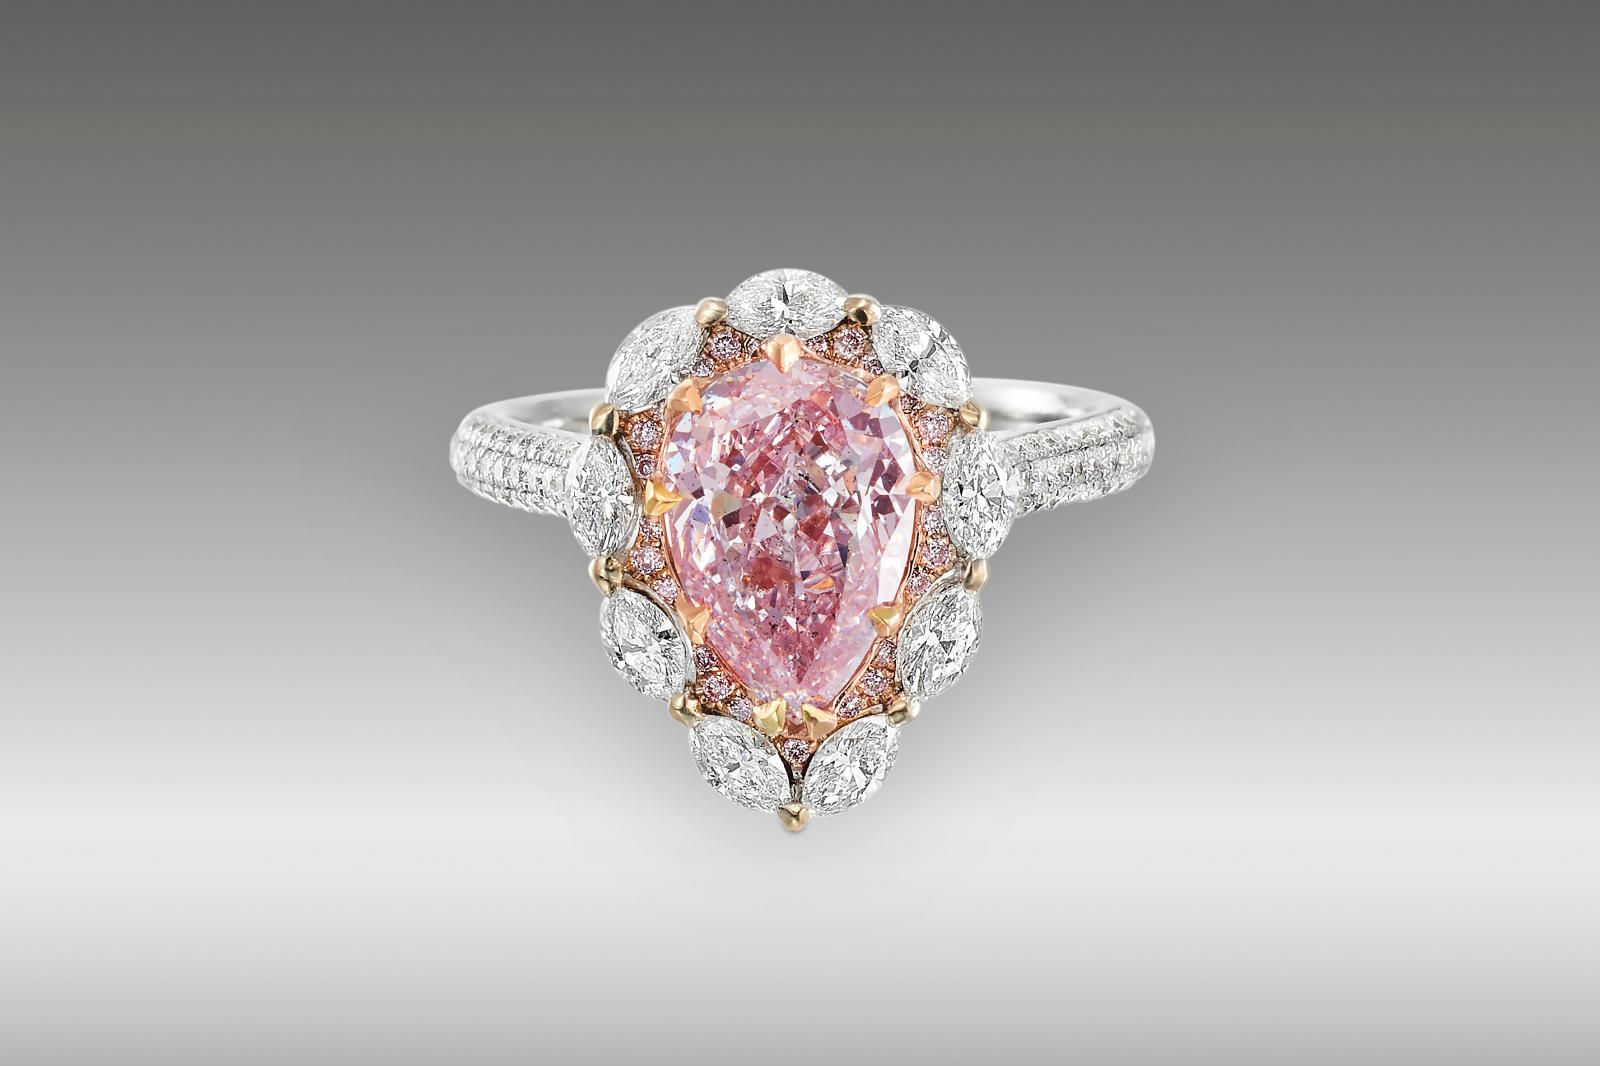 Du côté des écrins (M. De Garo), la star a été, avec 115 450 €, cette bague en or bicolore centrée d’un diamant Fancy Light Purplish Pink.